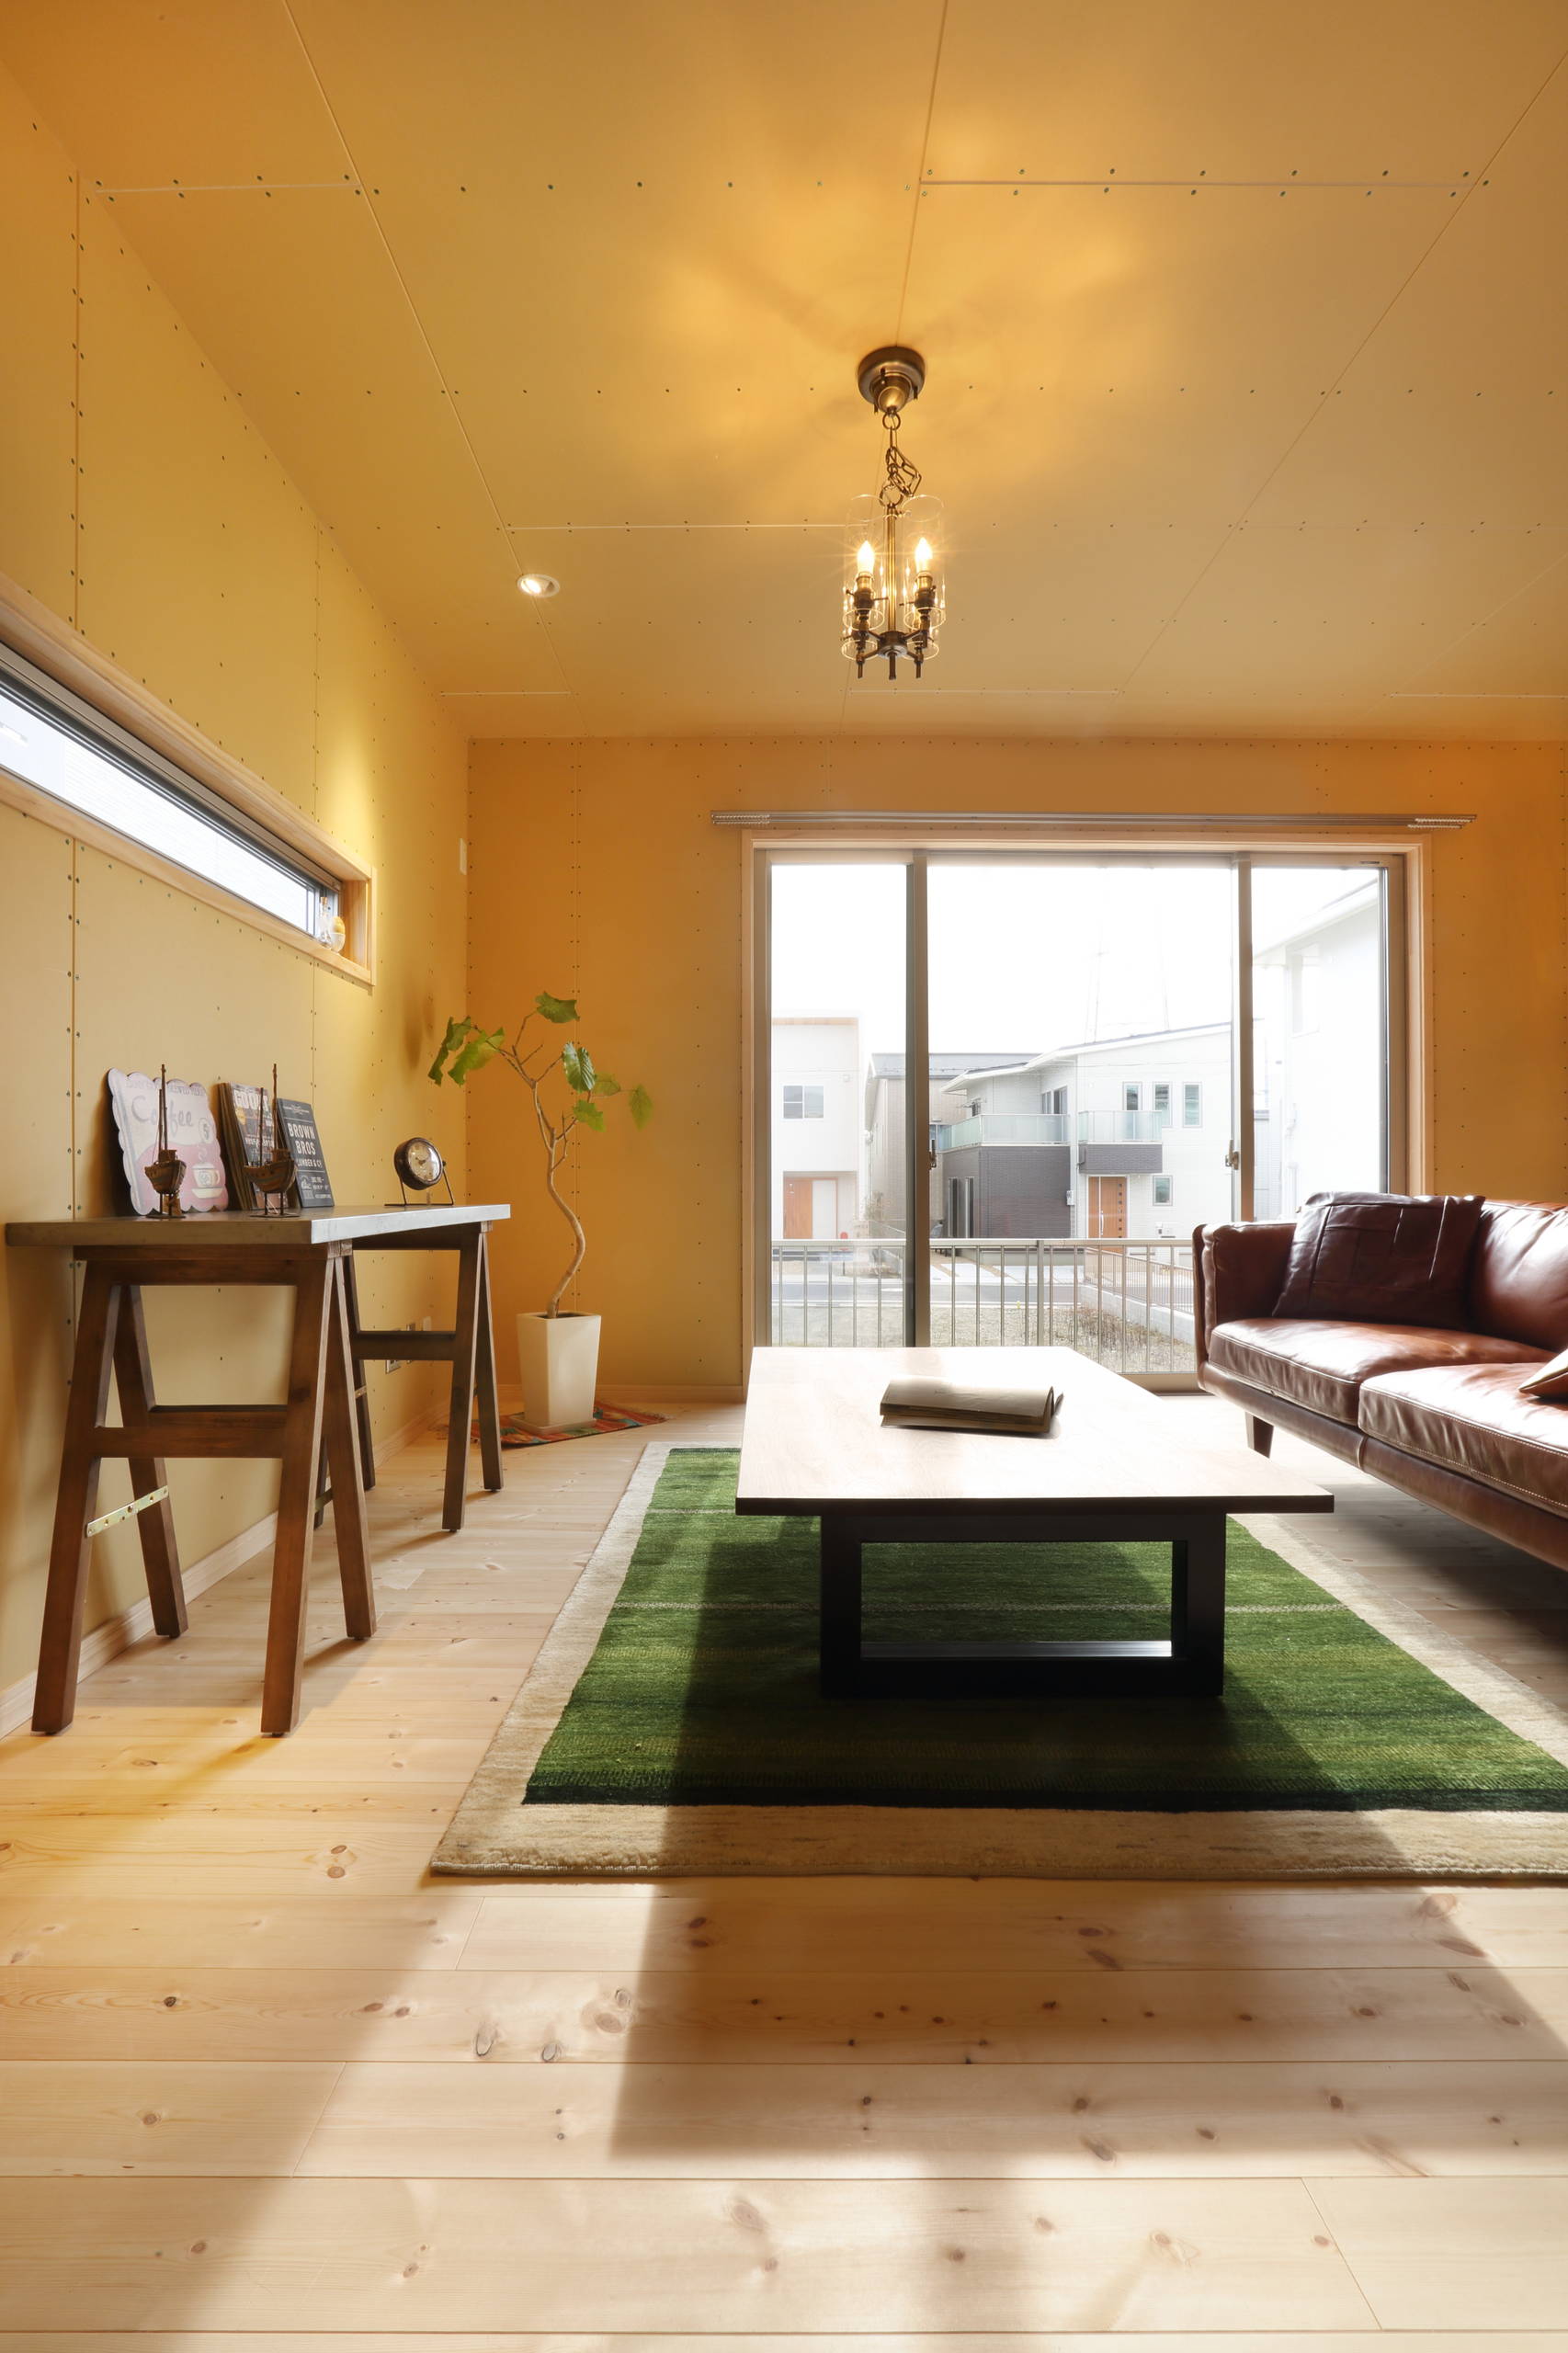 内装素地仕上げの家 Eclectic Living Room Other By 株式会社 宮本組 Houzz